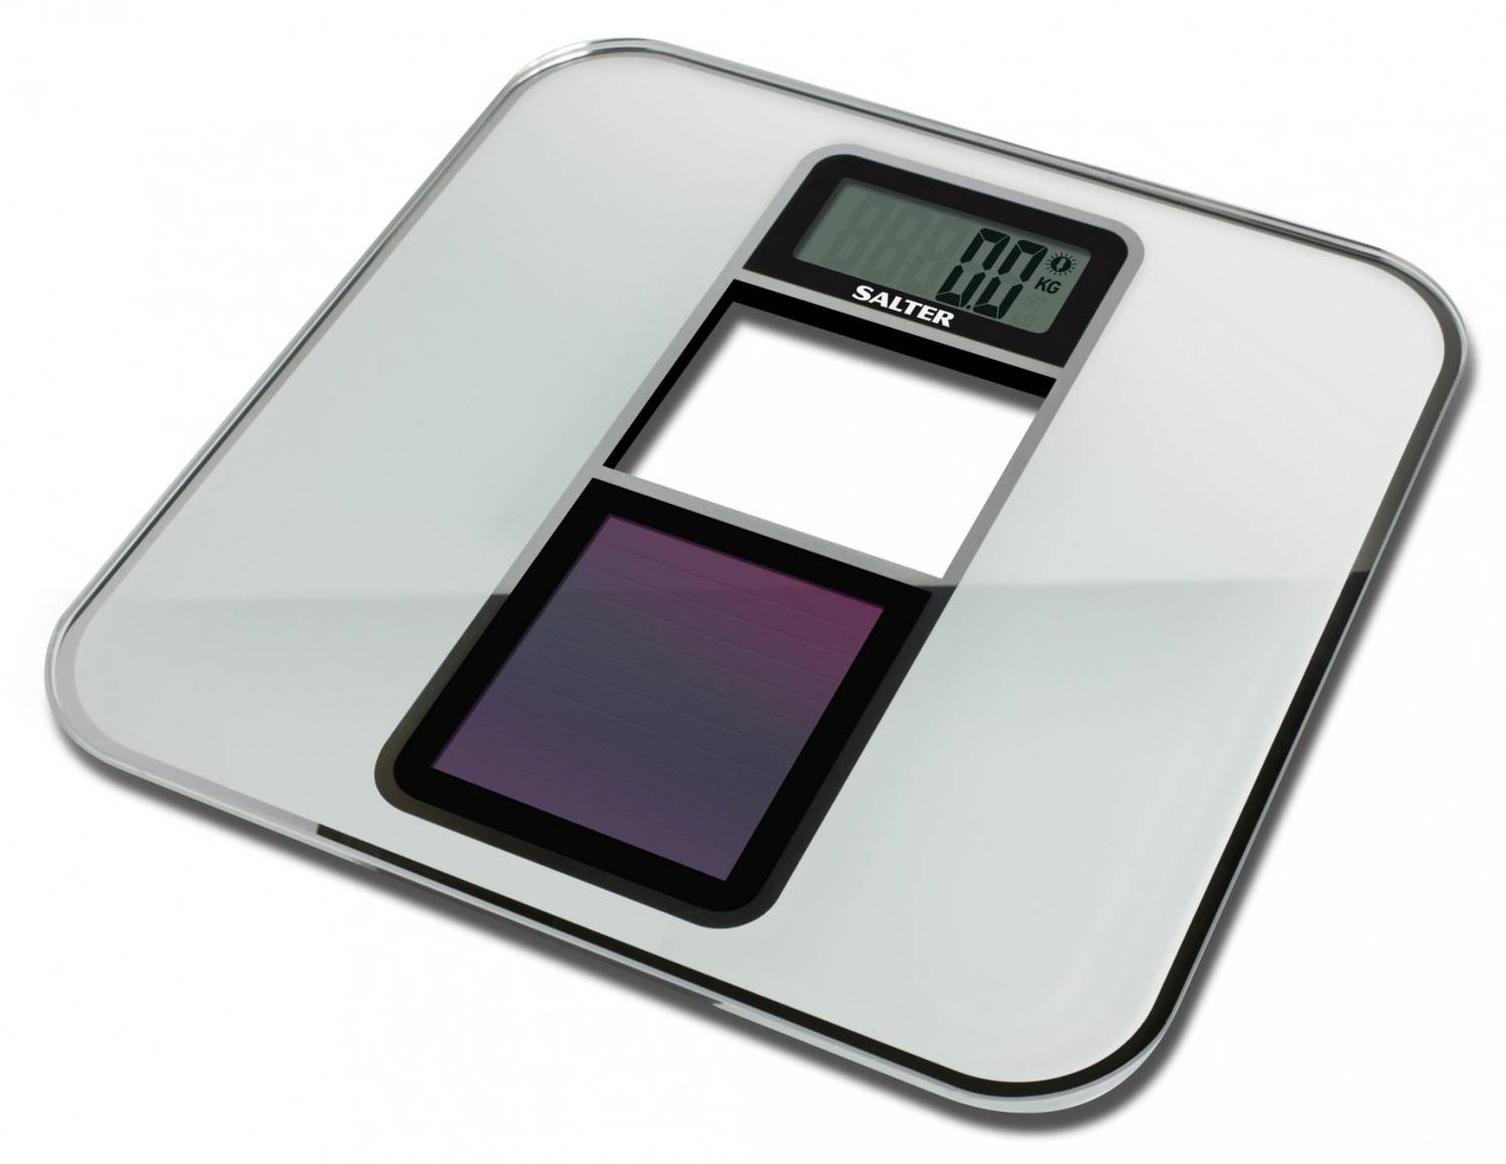 Tasche protettive da 40 kg Bilancia digitale per appendere i pesi Bilancia pesapersone Multi usata Bilancia peso Stadera nera Nera 